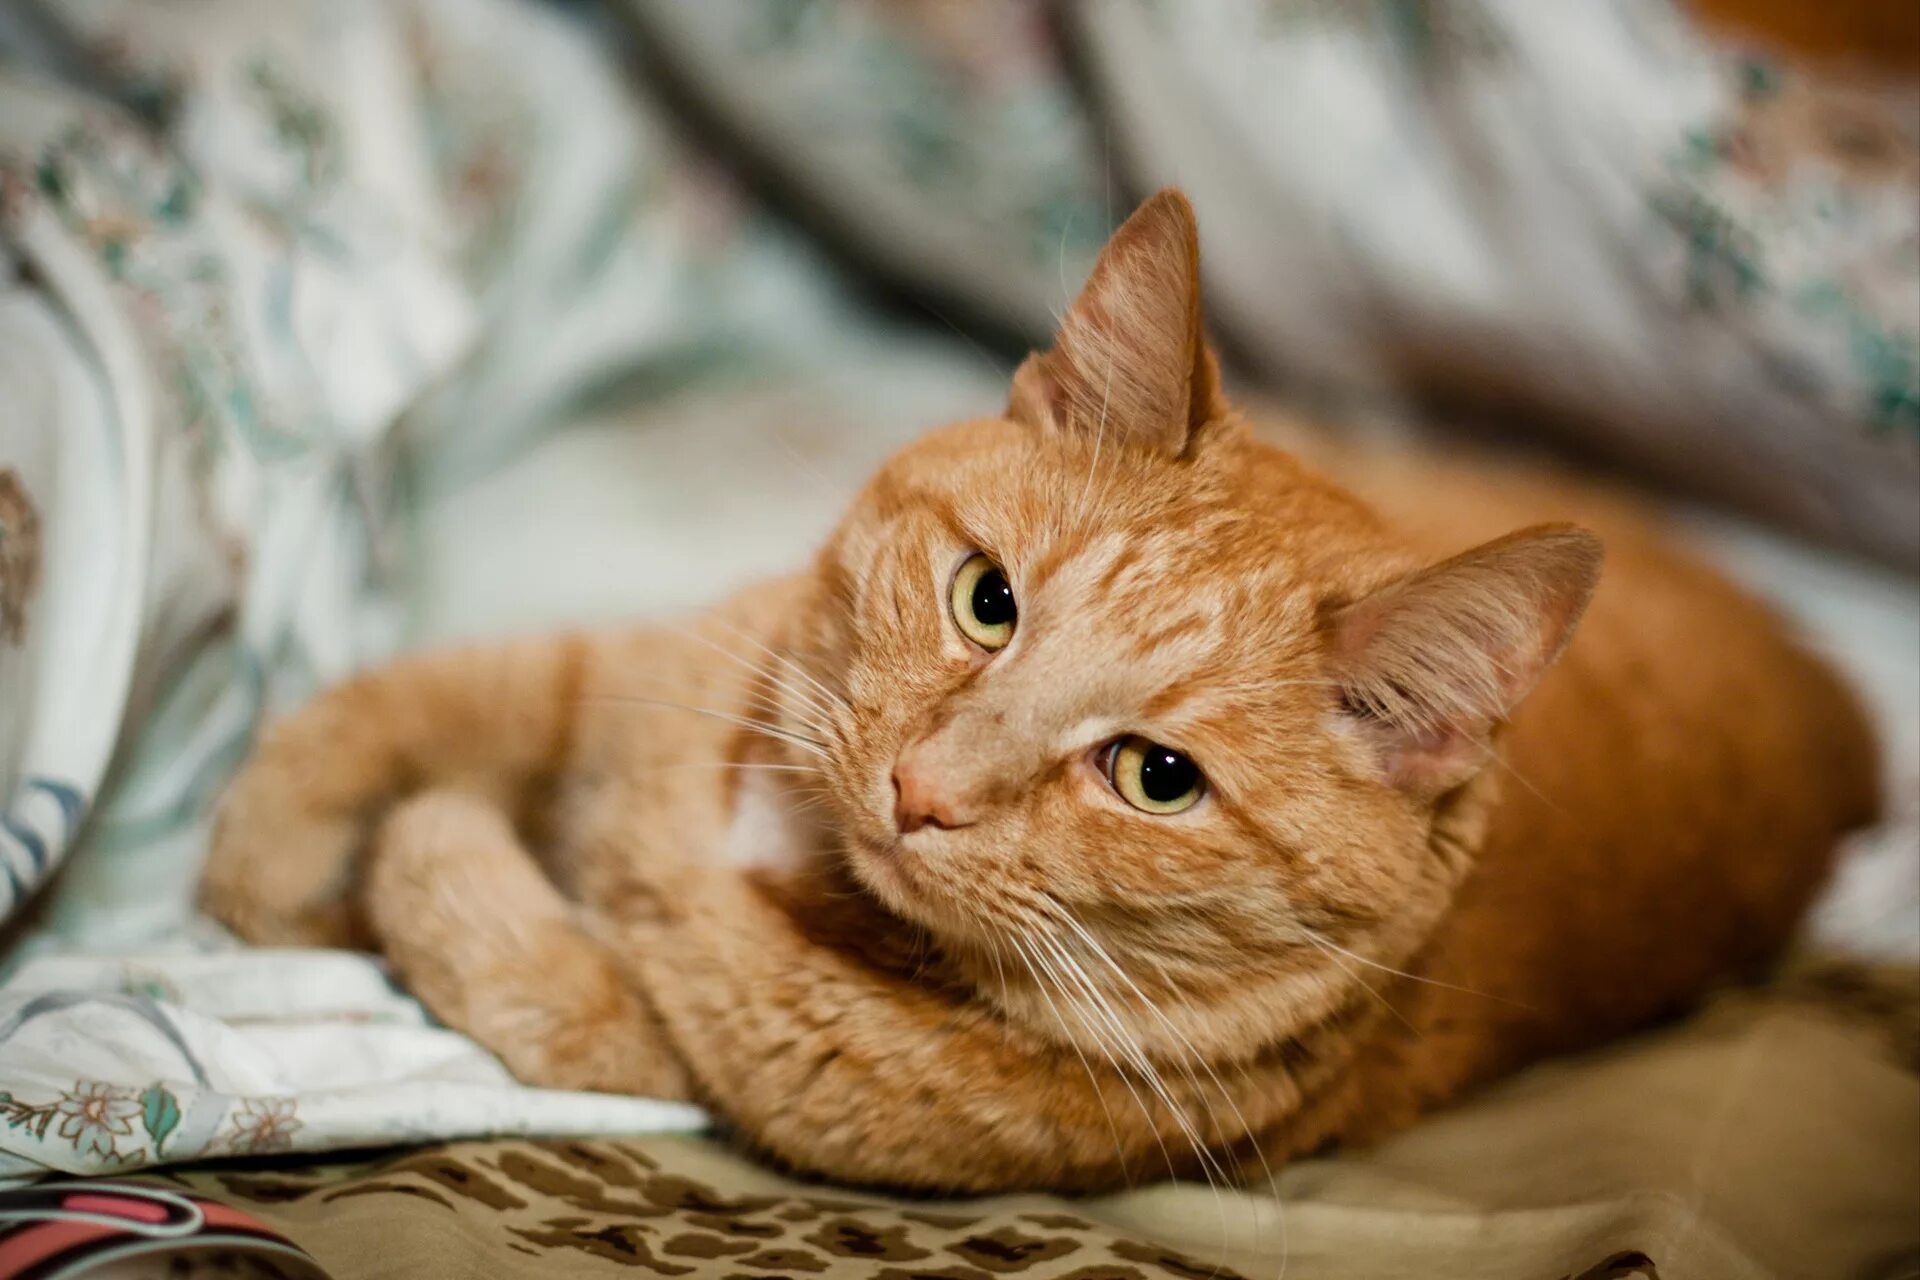 Cats me red. Аравийский МАУ рыжий. Сибирский гладкошерстный рыжий кот. Метис кошка рыжая. Европейский короткошерстный кот рыжий.